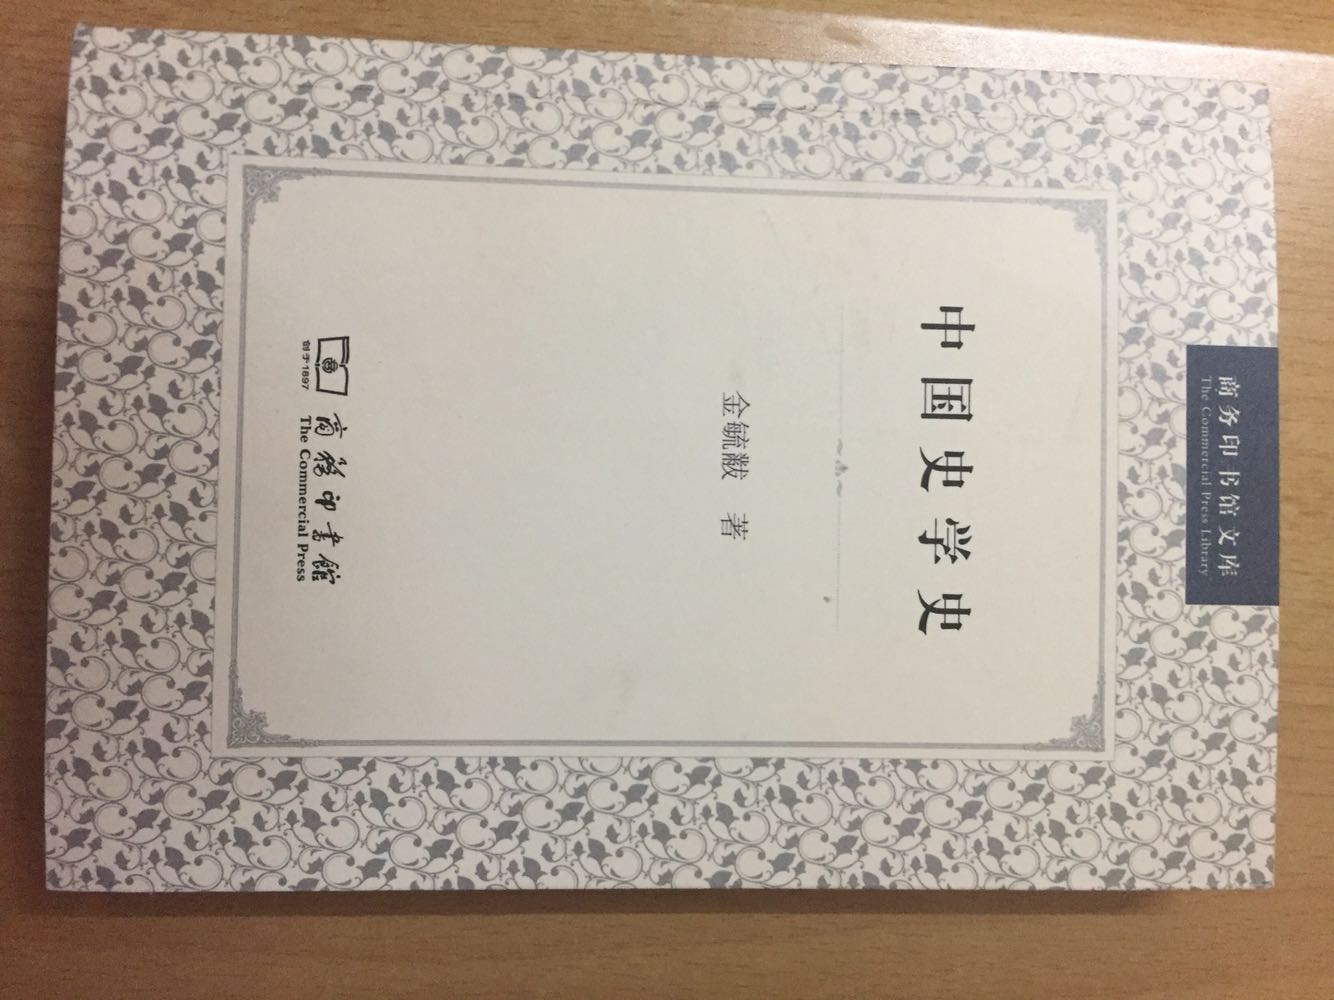 现代中国史学史经典著作之一，此本较商务另一版更实惠。纸张油墨都好，618超值！